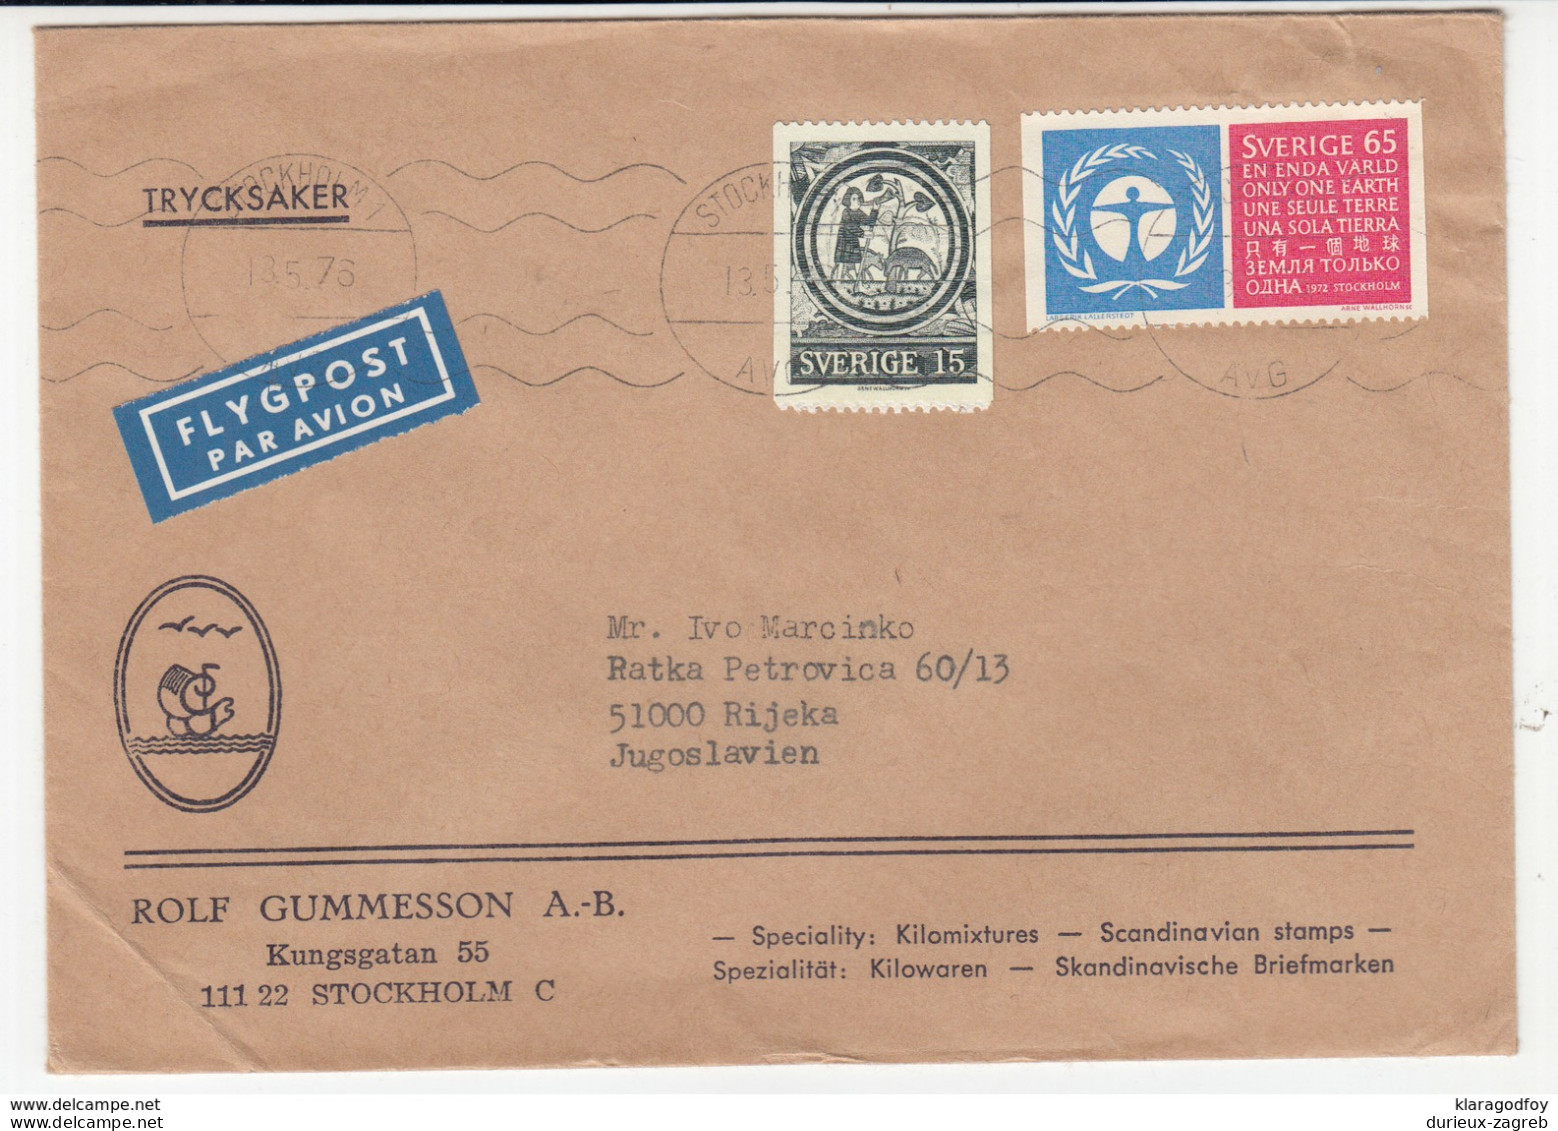 Sweden, Rolf Gummesson Company Letter Cover Airmail Travelled 1976 Stockholm Pmk B180220 - Briefe U. Dokumente